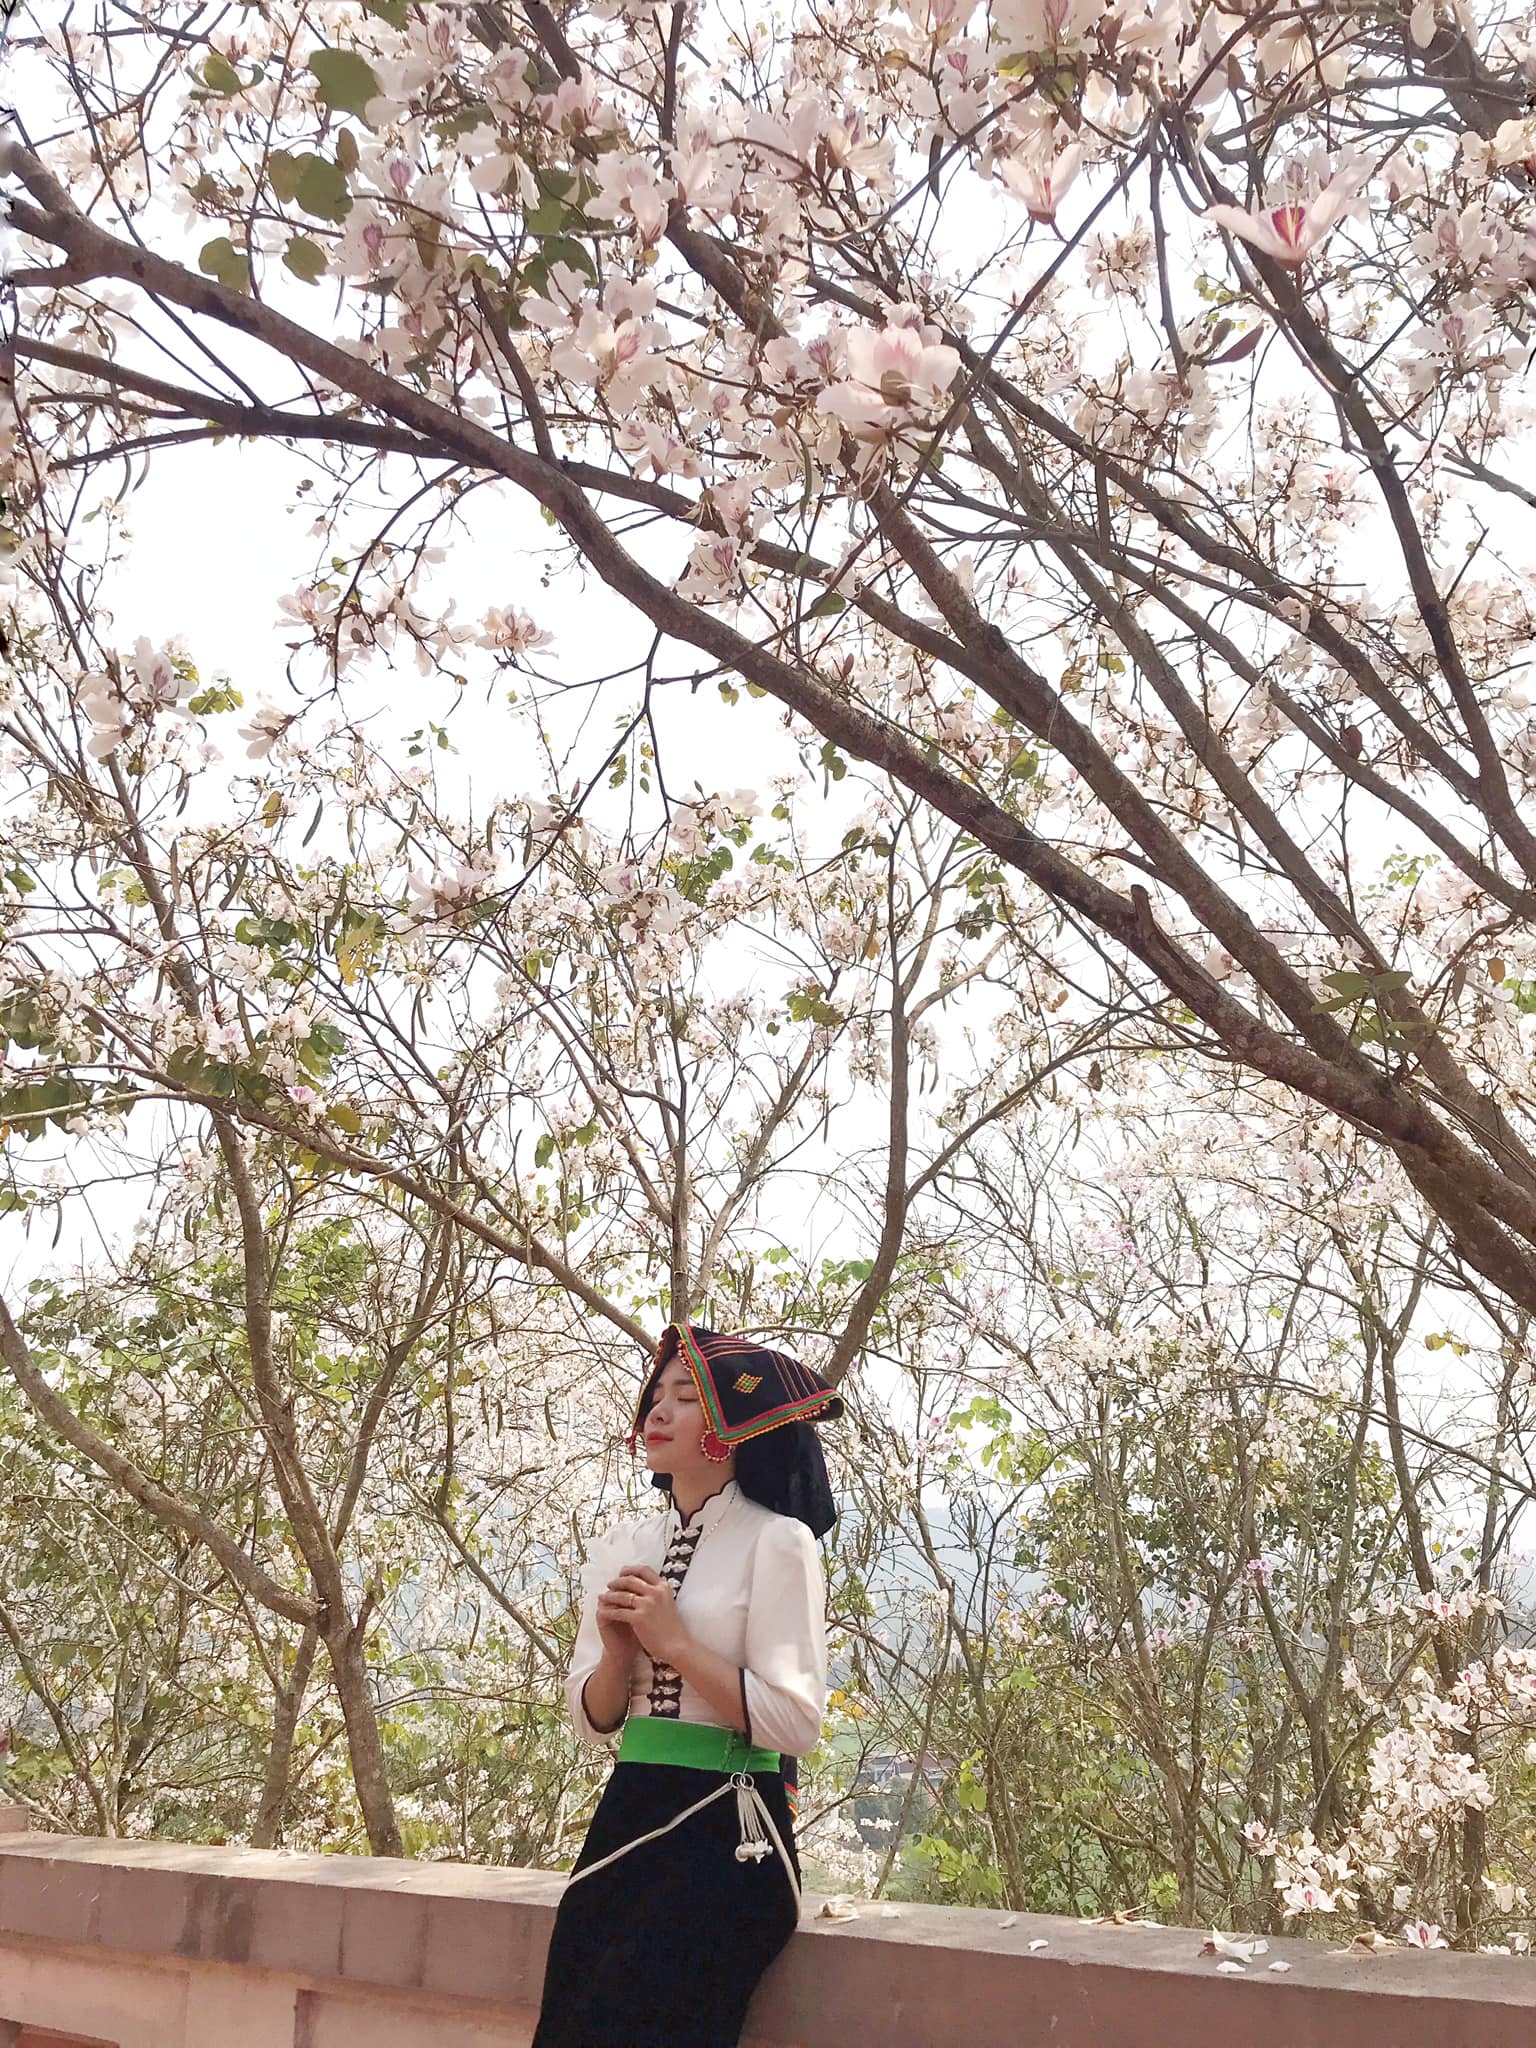 Ngất ngây trước vẻ đẹp Điện Biên mùa hoa ban nở lung linh nhất trong năm - ảnh 2